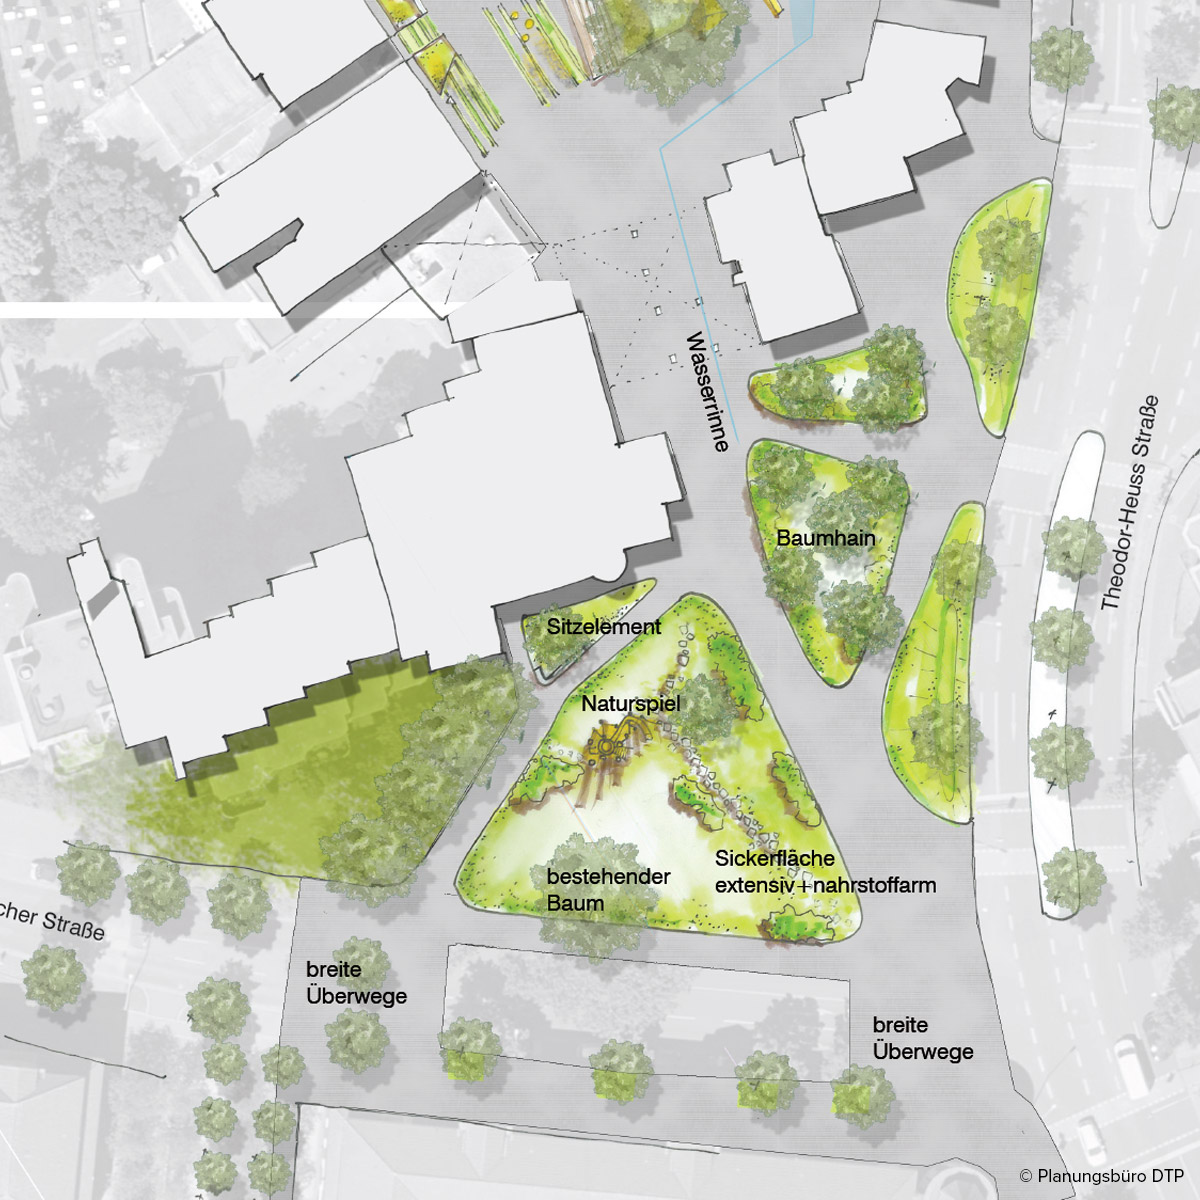 Gezeichnete Planungsskizze zu grünen Umgestaltung des Wohnviertels in Herten.